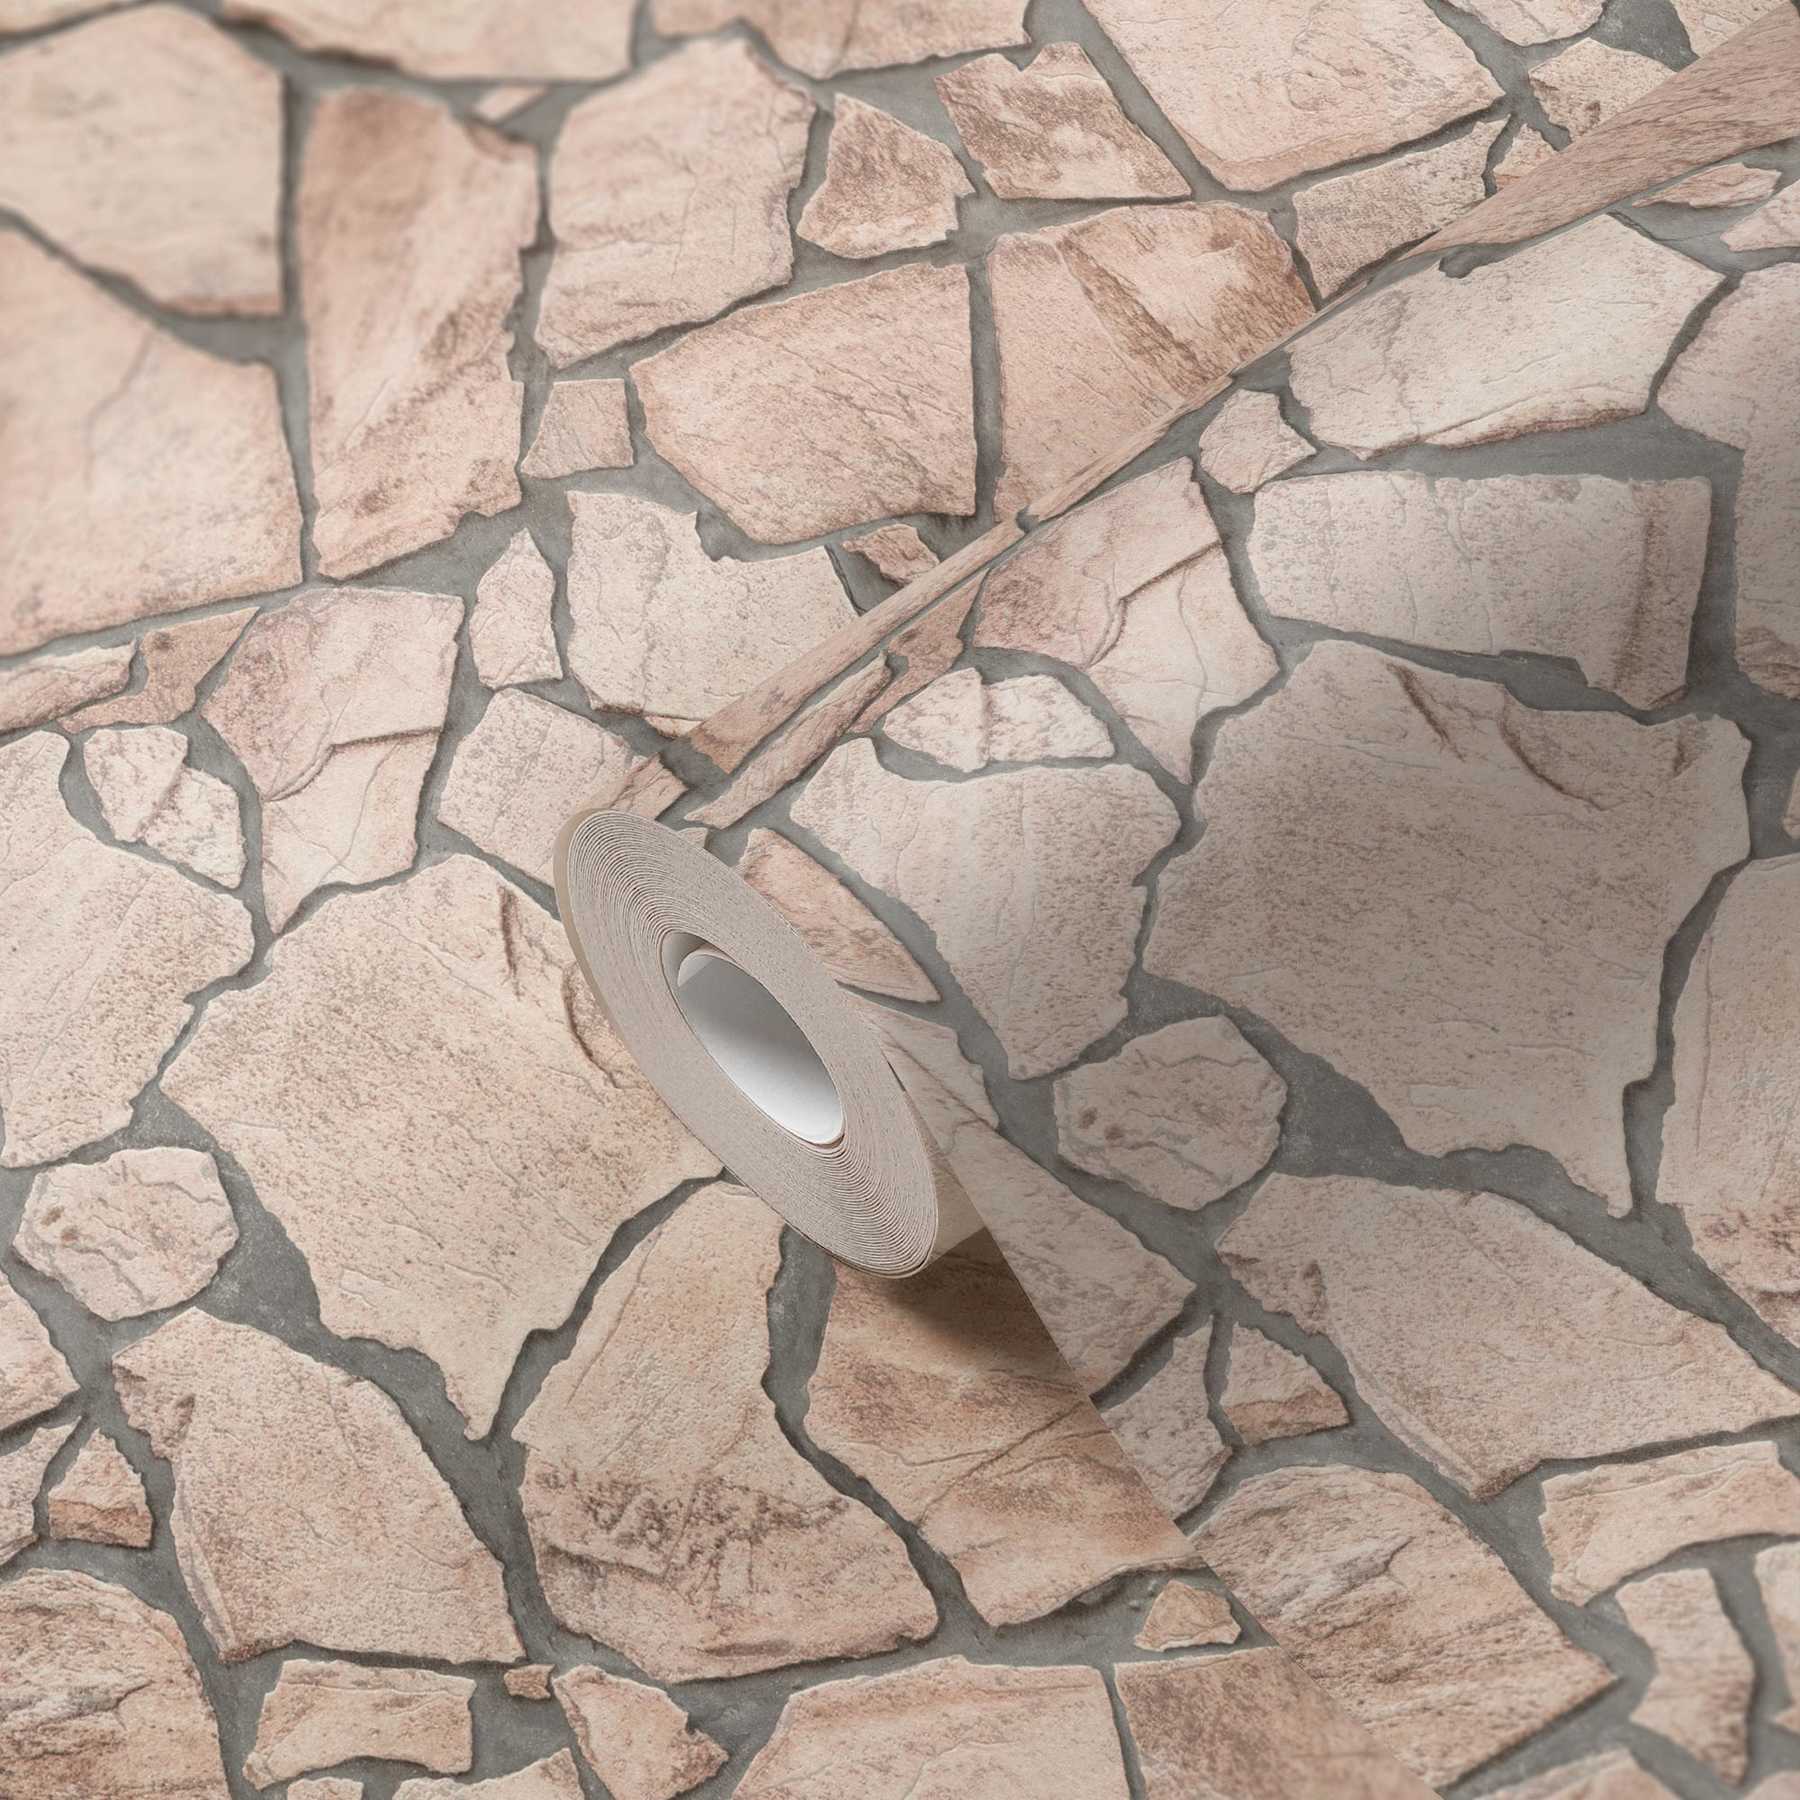             Steintapete 3D-Effekt, realistisches Natursteinmuster – Beige, Grau, Braun
        